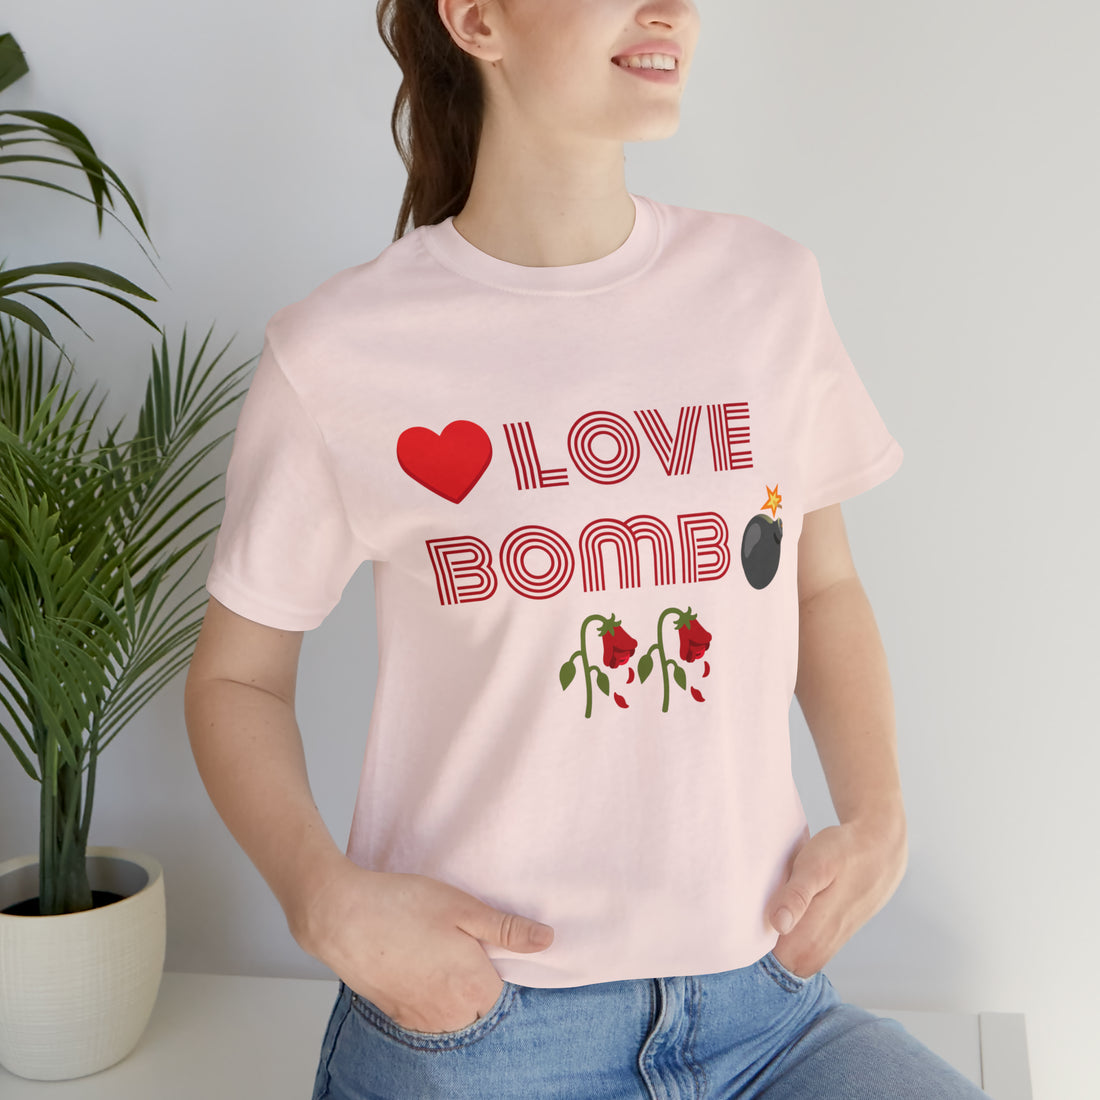 Unisex Love Bomb Typography Jersey Tee